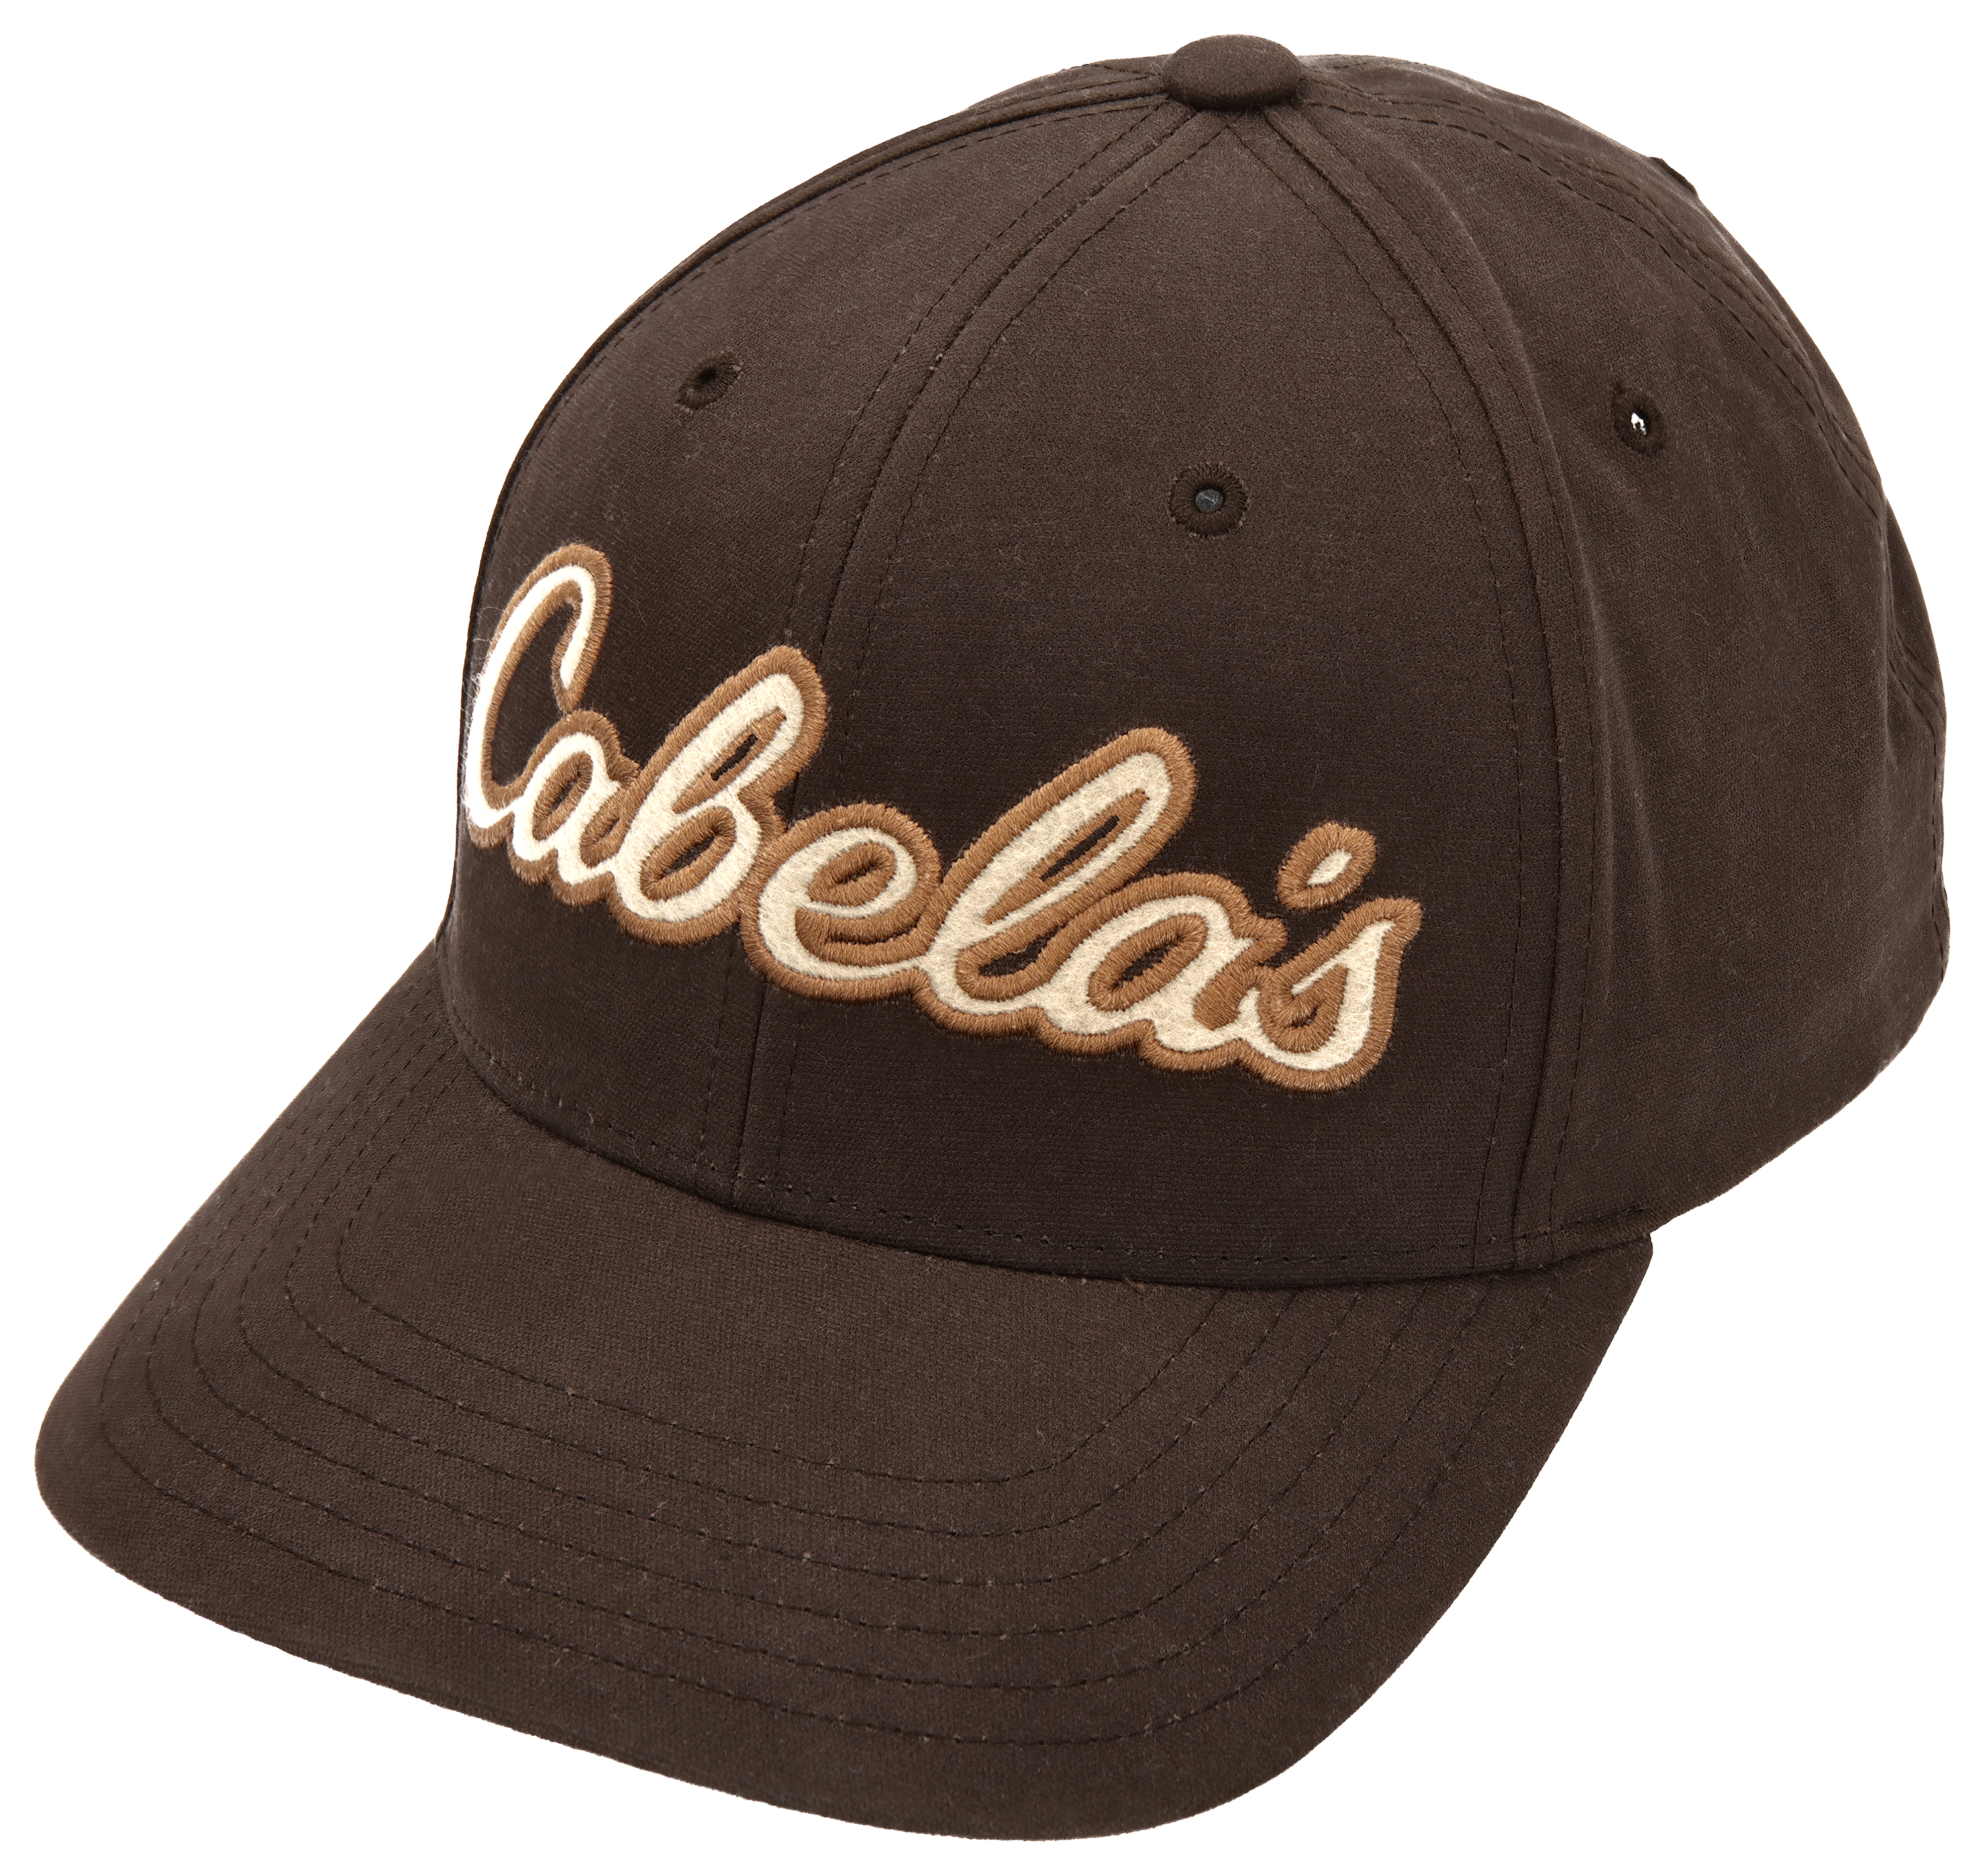 Cabela's Hoodies, Tees & Caps